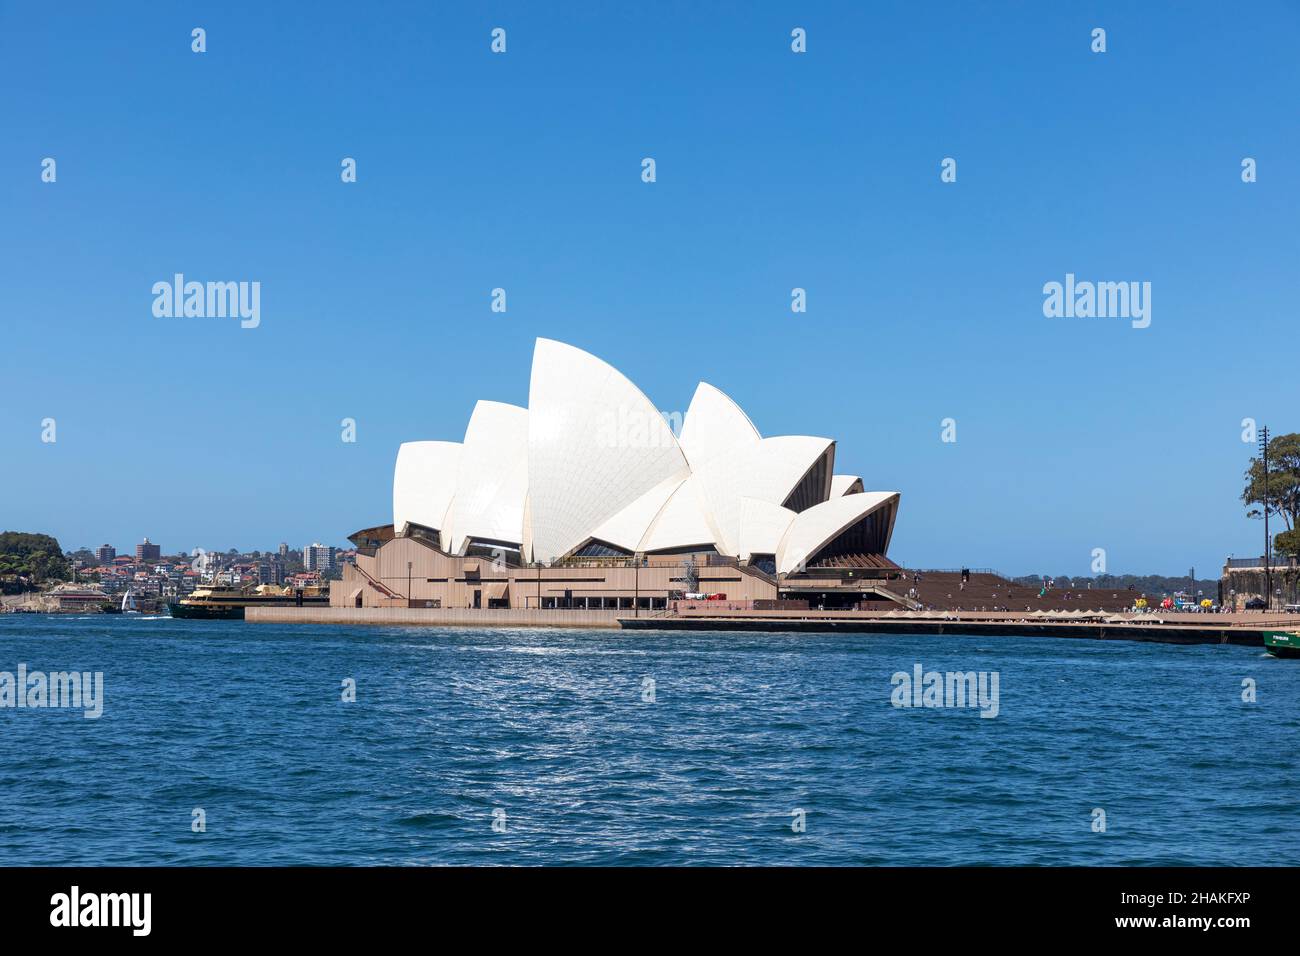 La Sydney Opera House, famosa in tutto il mondo, si trova a Sydney, 2021 dicembre, Australia, in una giornata estiva dal cielo blu chiaro Foto Stock